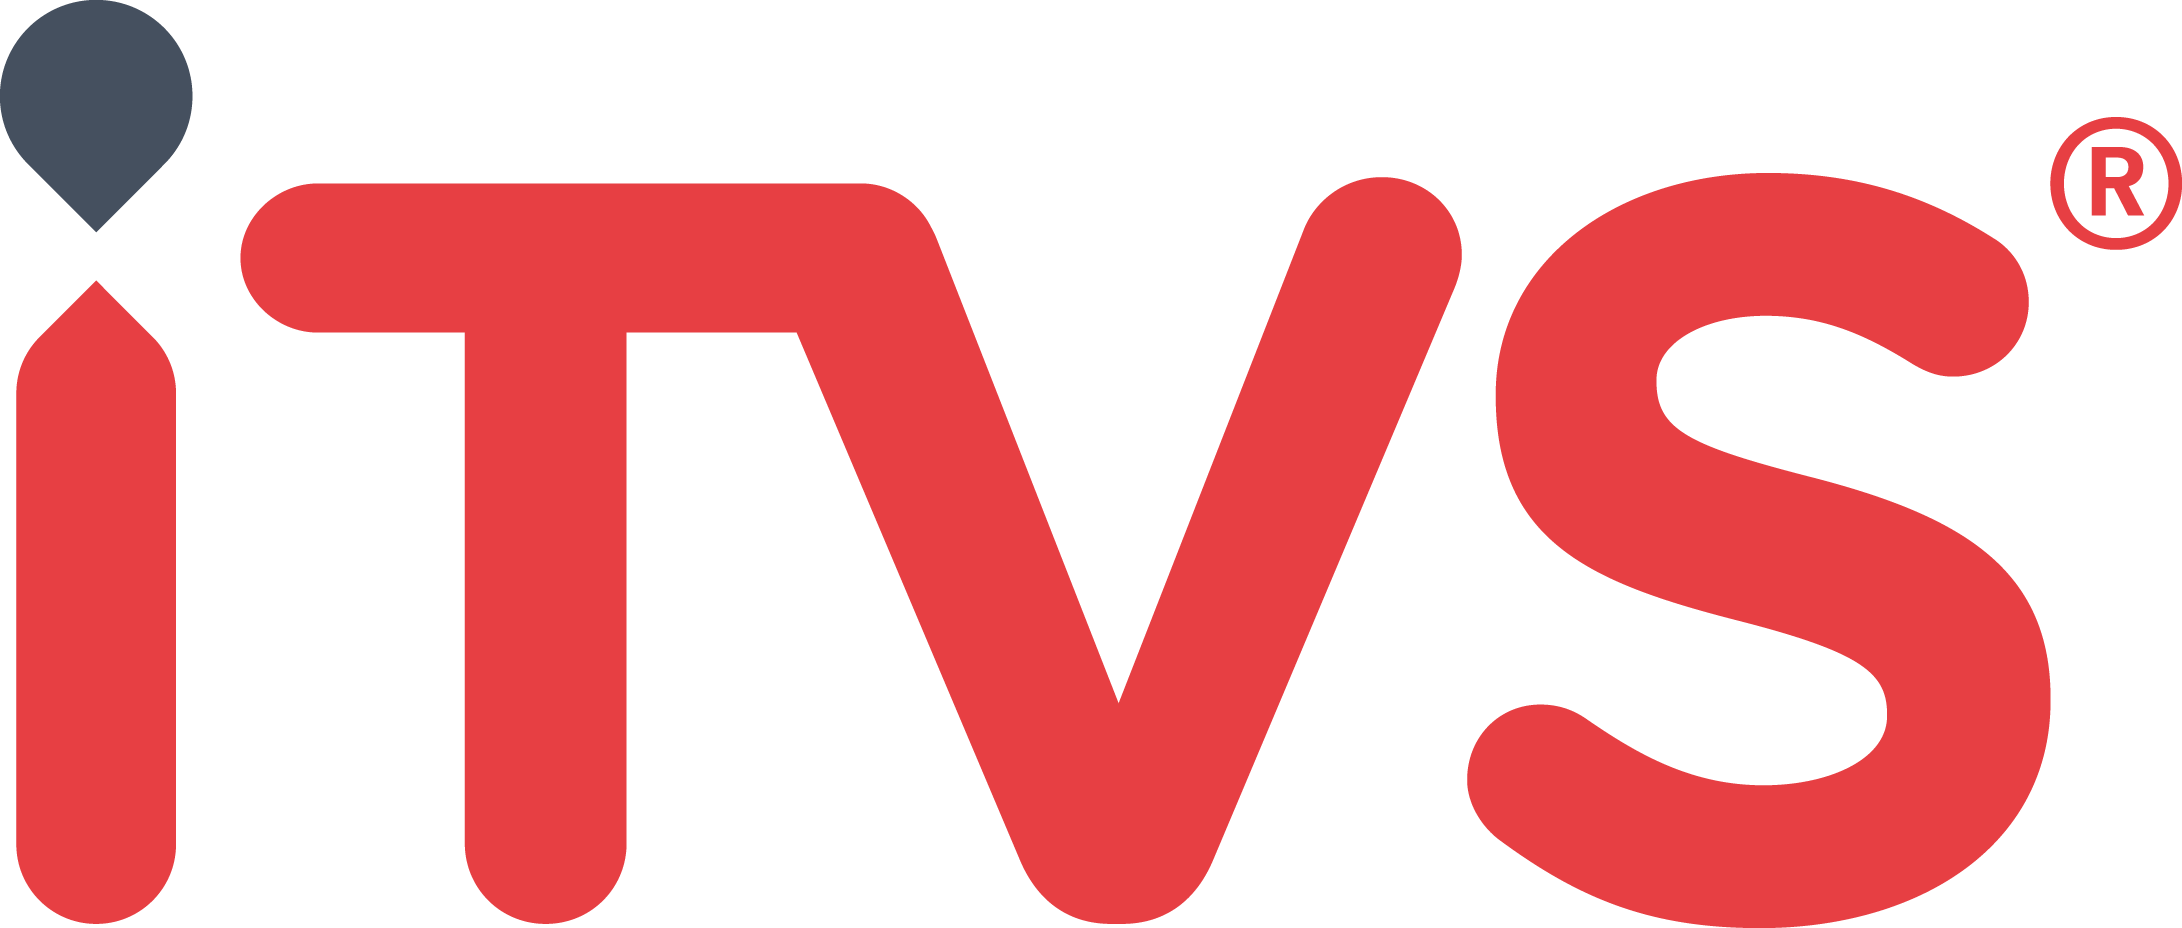 ITVS_Logo_RegistrationMark_PMS.png